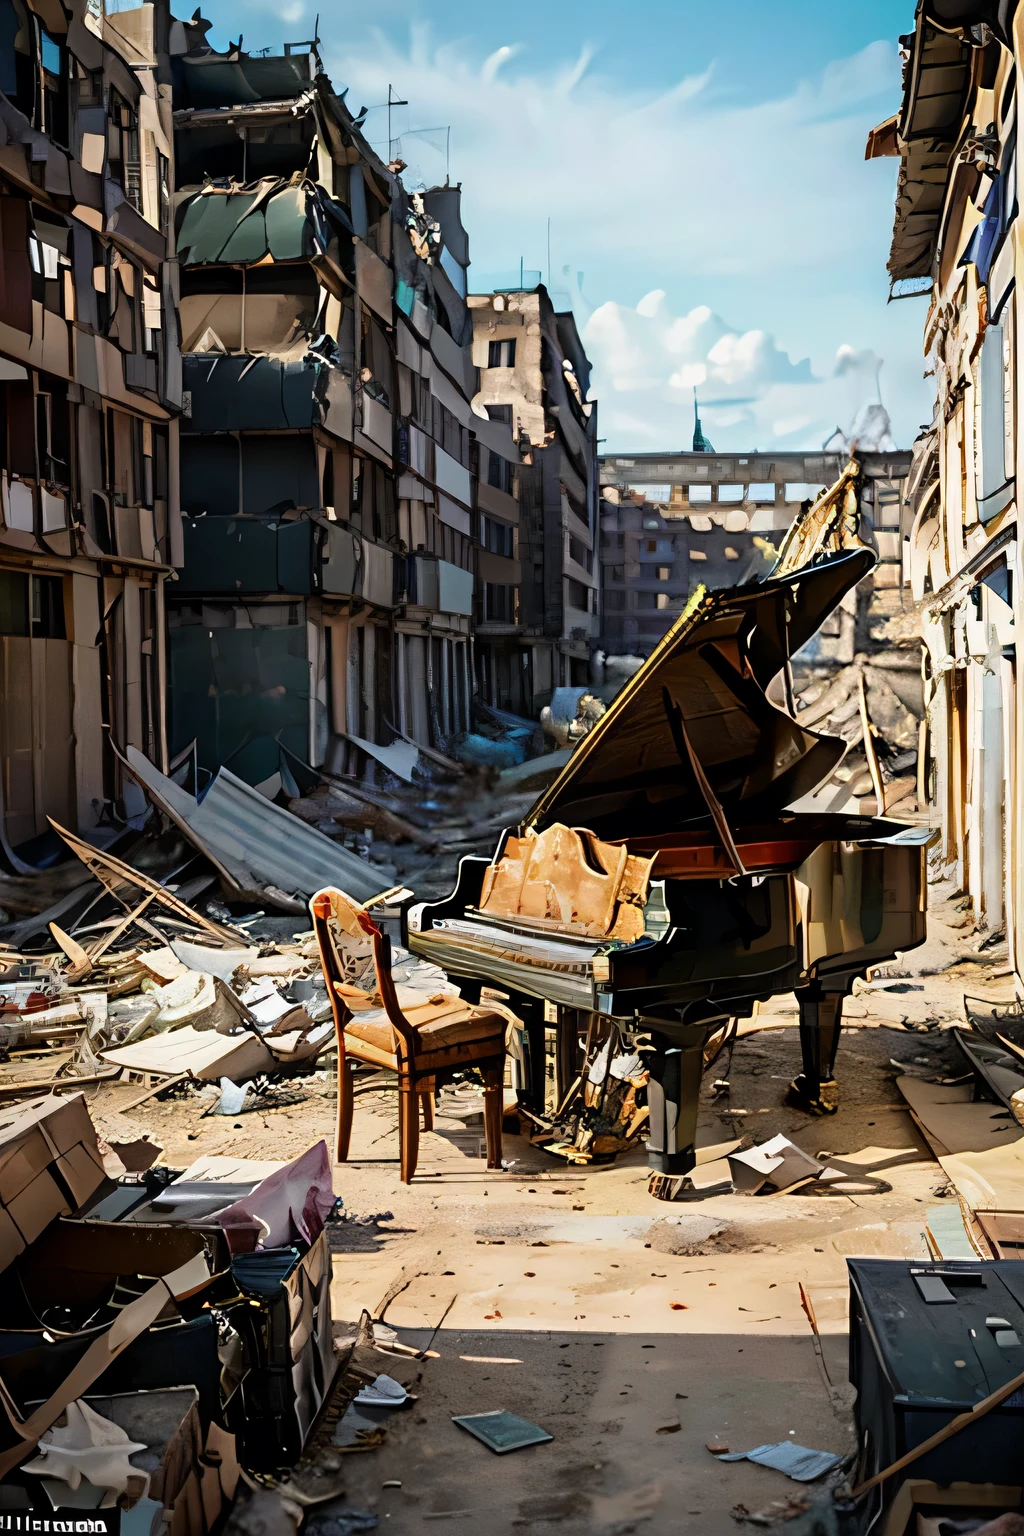 전쟁으로 폐허가 된 베를린의 한가운데에서, 거기에 그랜드 피아노가 서 있었어, 잔해 속에서도 기적적으로 사람의 손길이 닿지 않은 채. 이 피아노는 전쟁이 발발하자 도시를 떠난 유명한 피아니스트의 소유였습니다., 사랑하는 악기를 남겨두고.